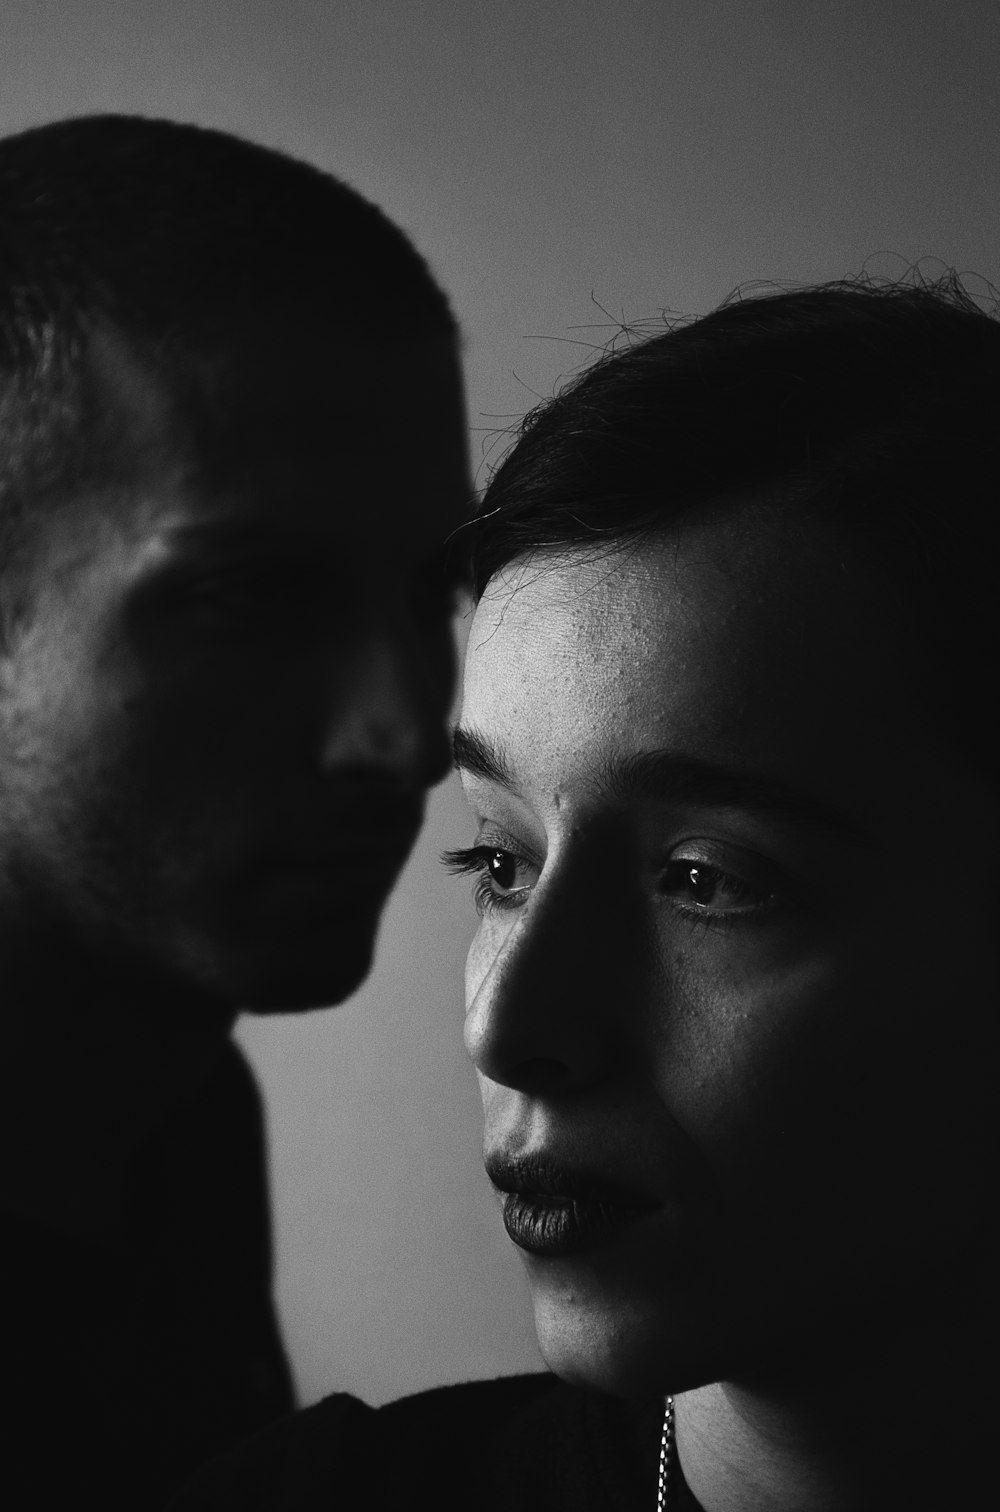 uomo e donna nella fotografia in scala di grigi